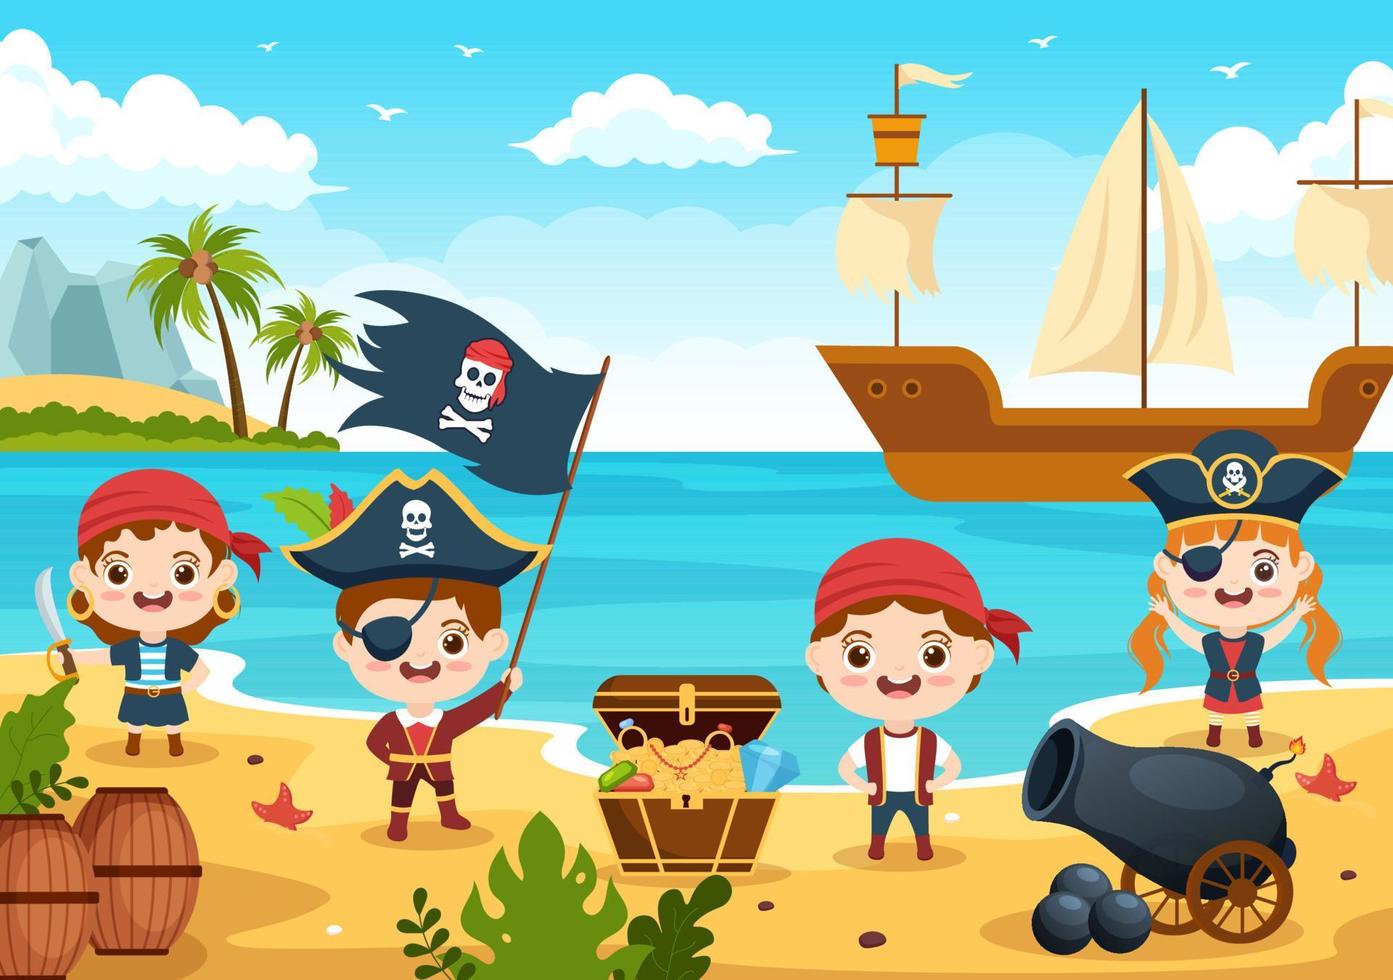 söt pirattecknad figurillustration med trähjul, bröst, vintage karibien, pirater och jolly roger på fartyget på havet eller ön vektor